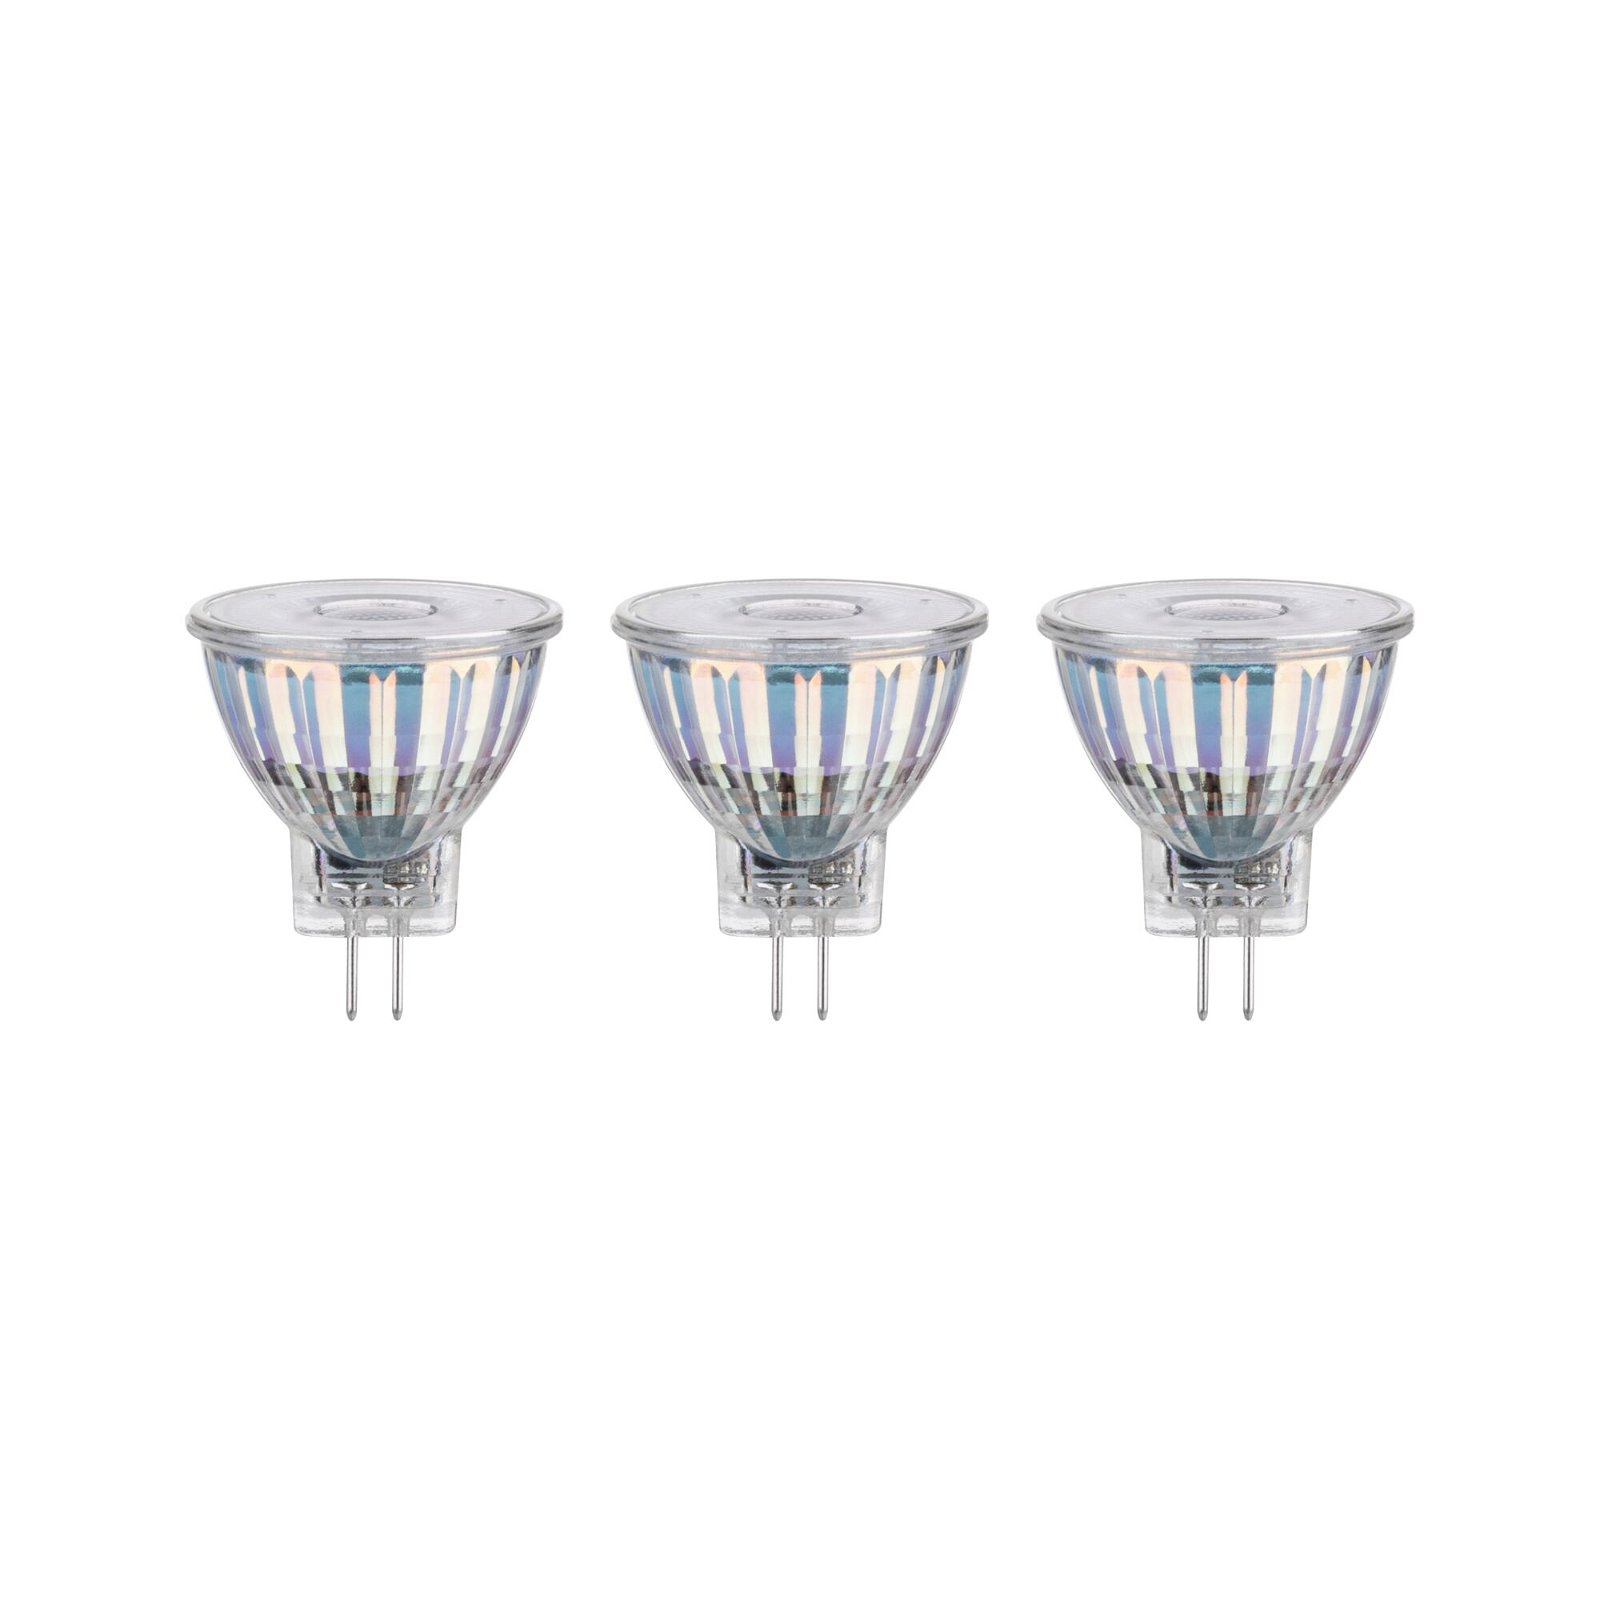 Standard 12V LED Reflektor GU4 3x345lm 3x4,2W 2700K Silber